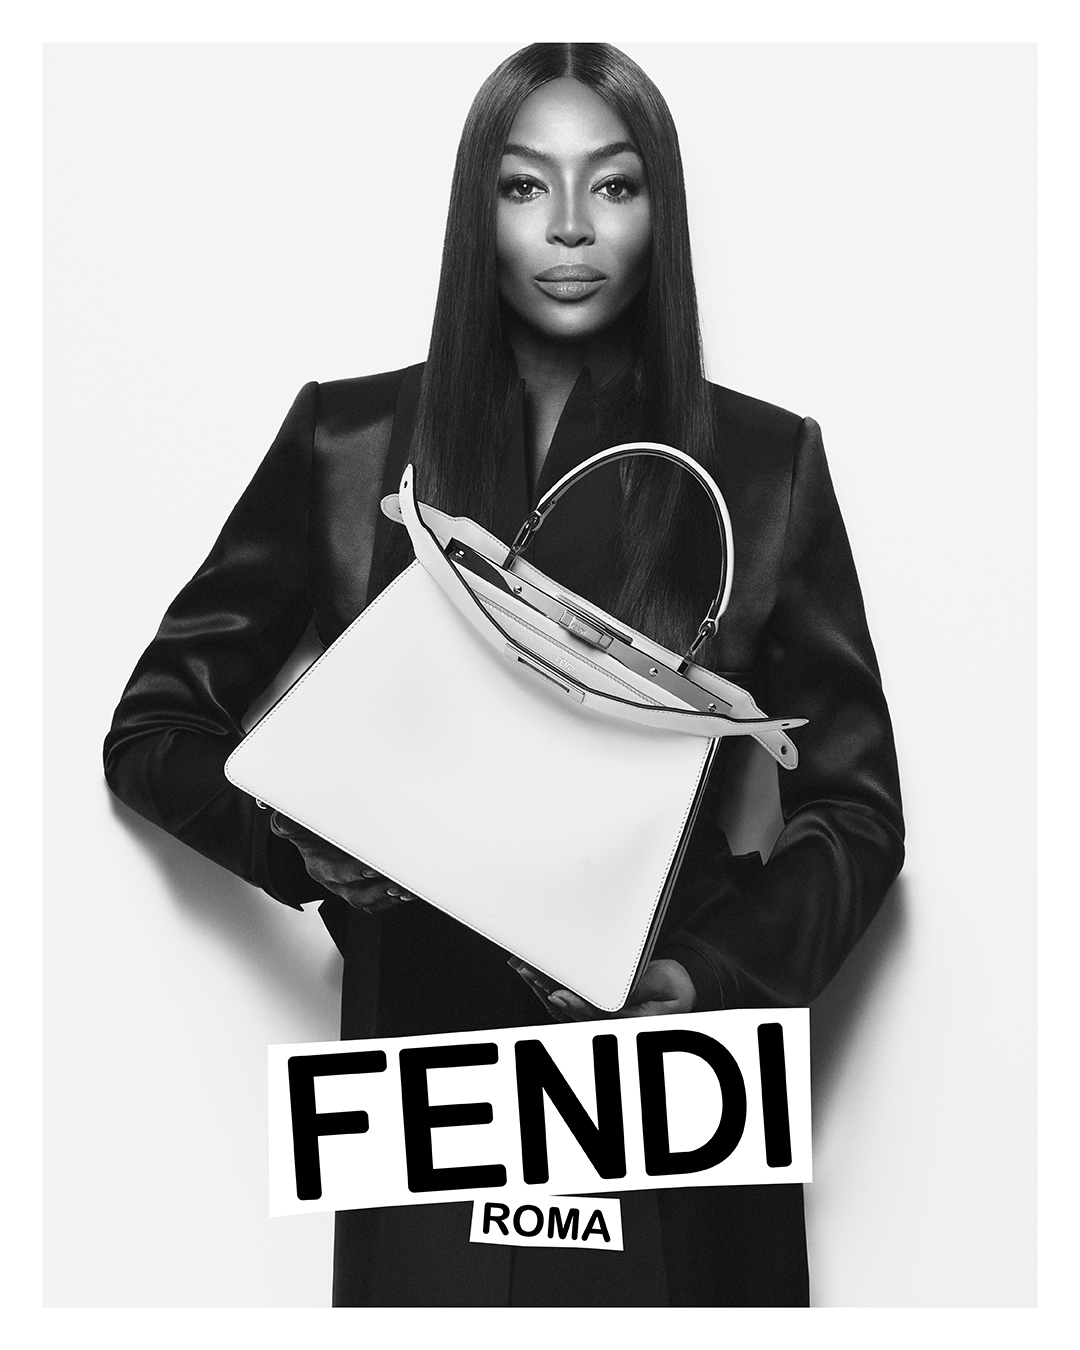 Fendi Spring 2023 Campaign Photo